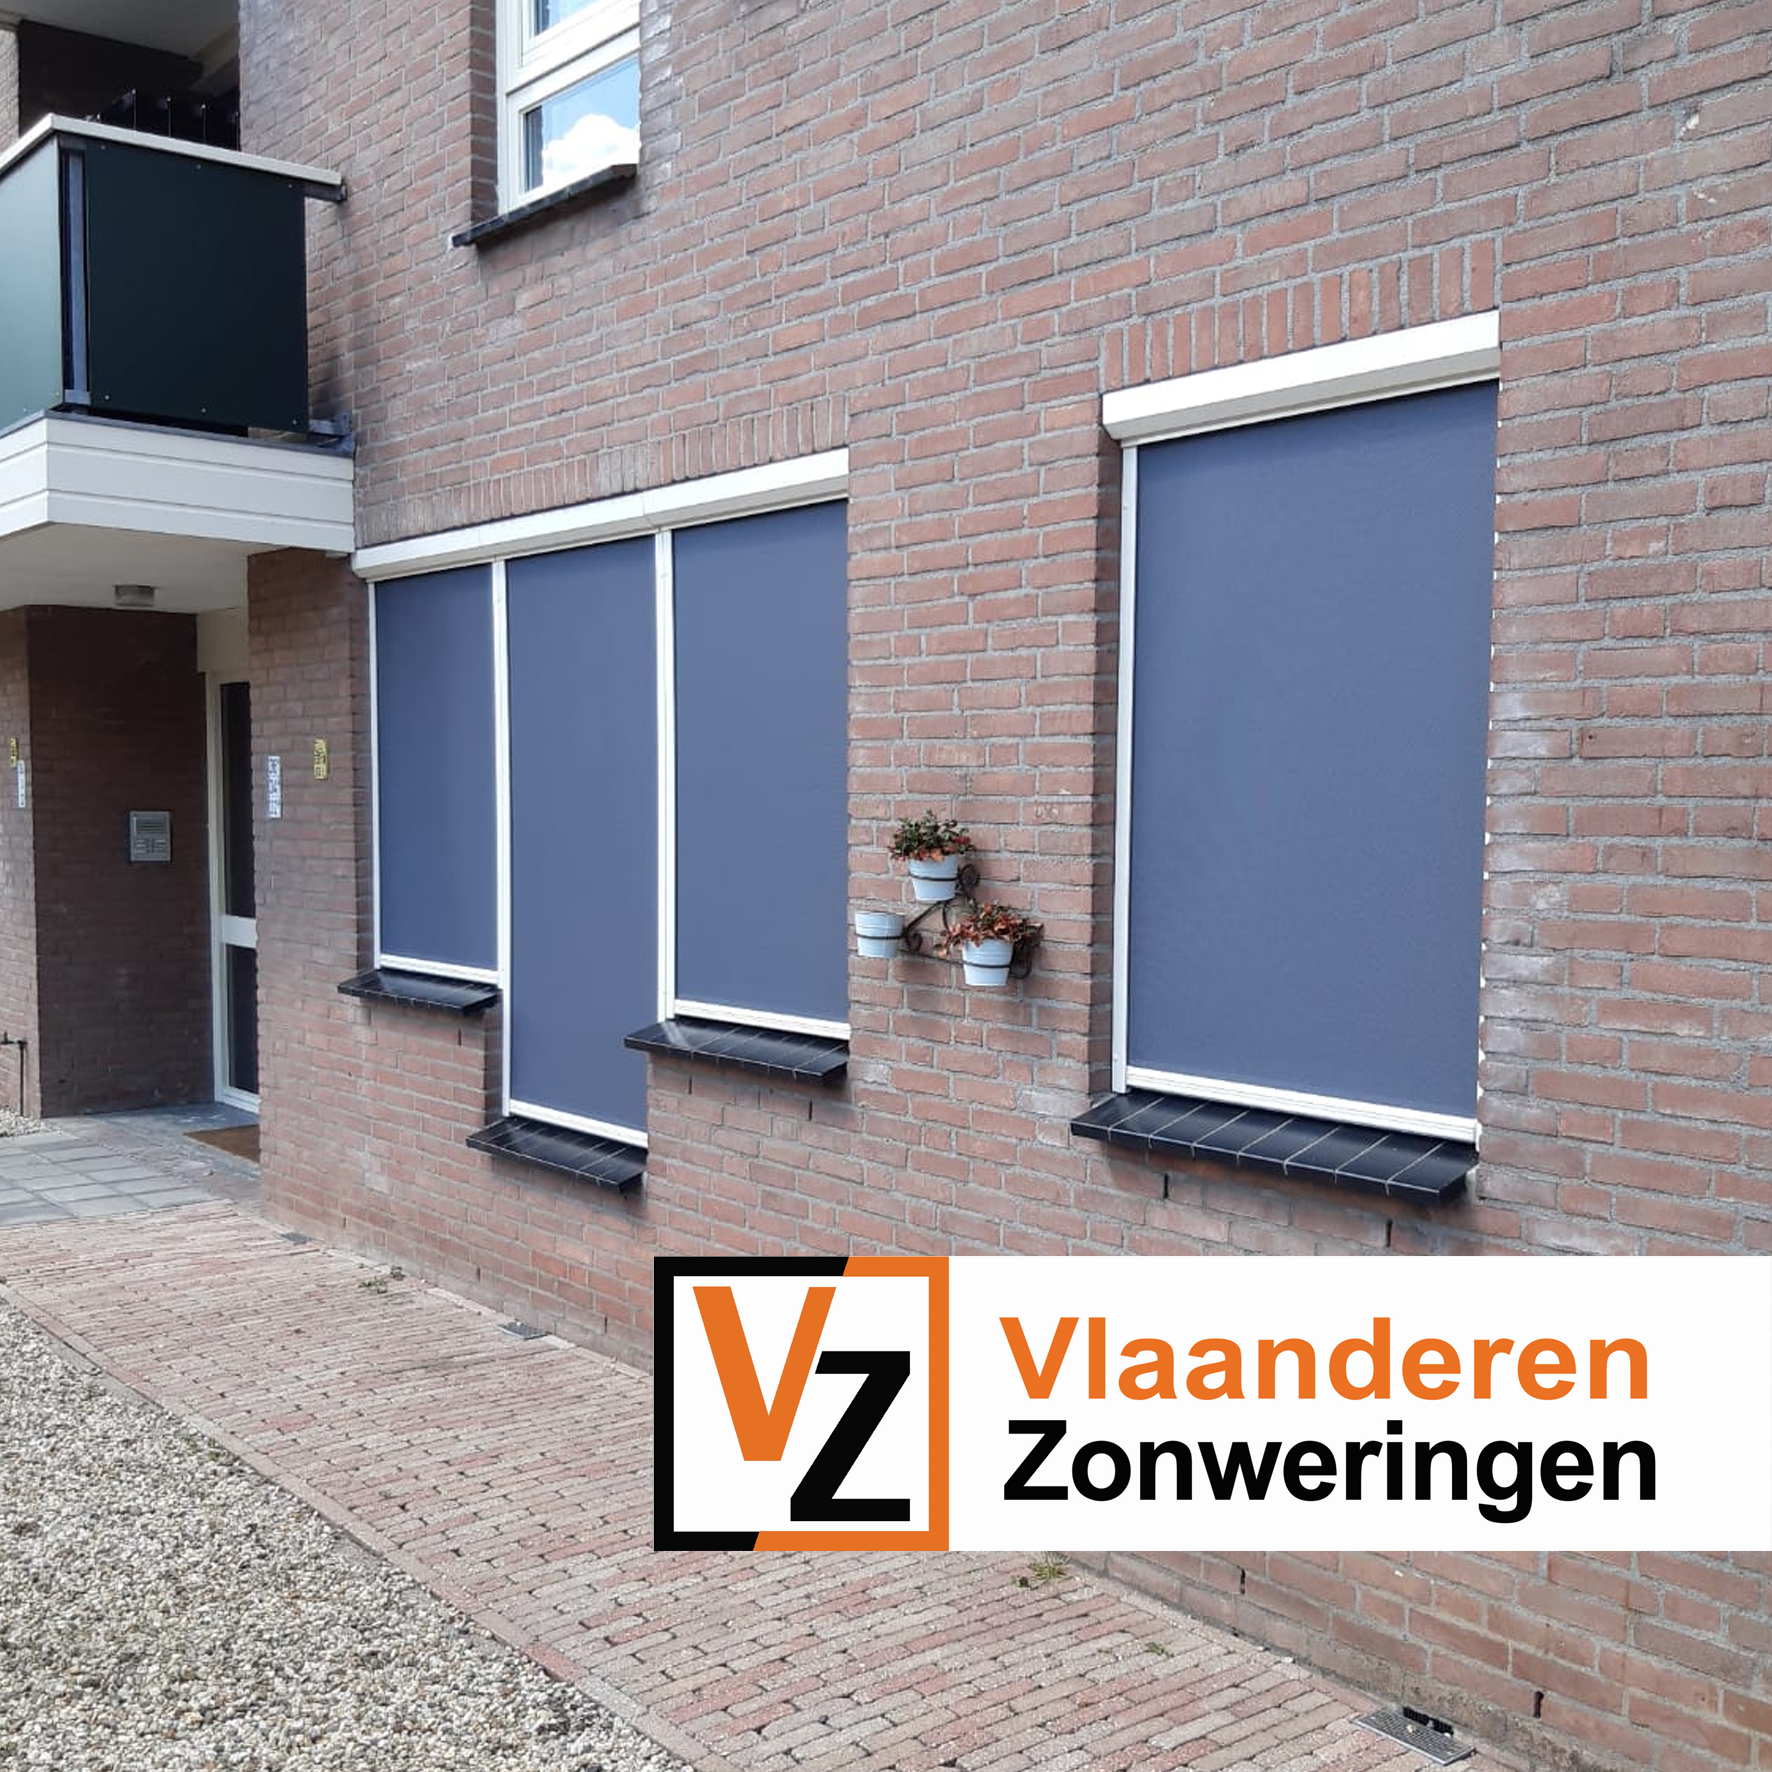 Ritsscreens op ongelijk vensterbank, op maat gemaakt door Vlaanderen Zonweringen.
Culemborg, regio Houten